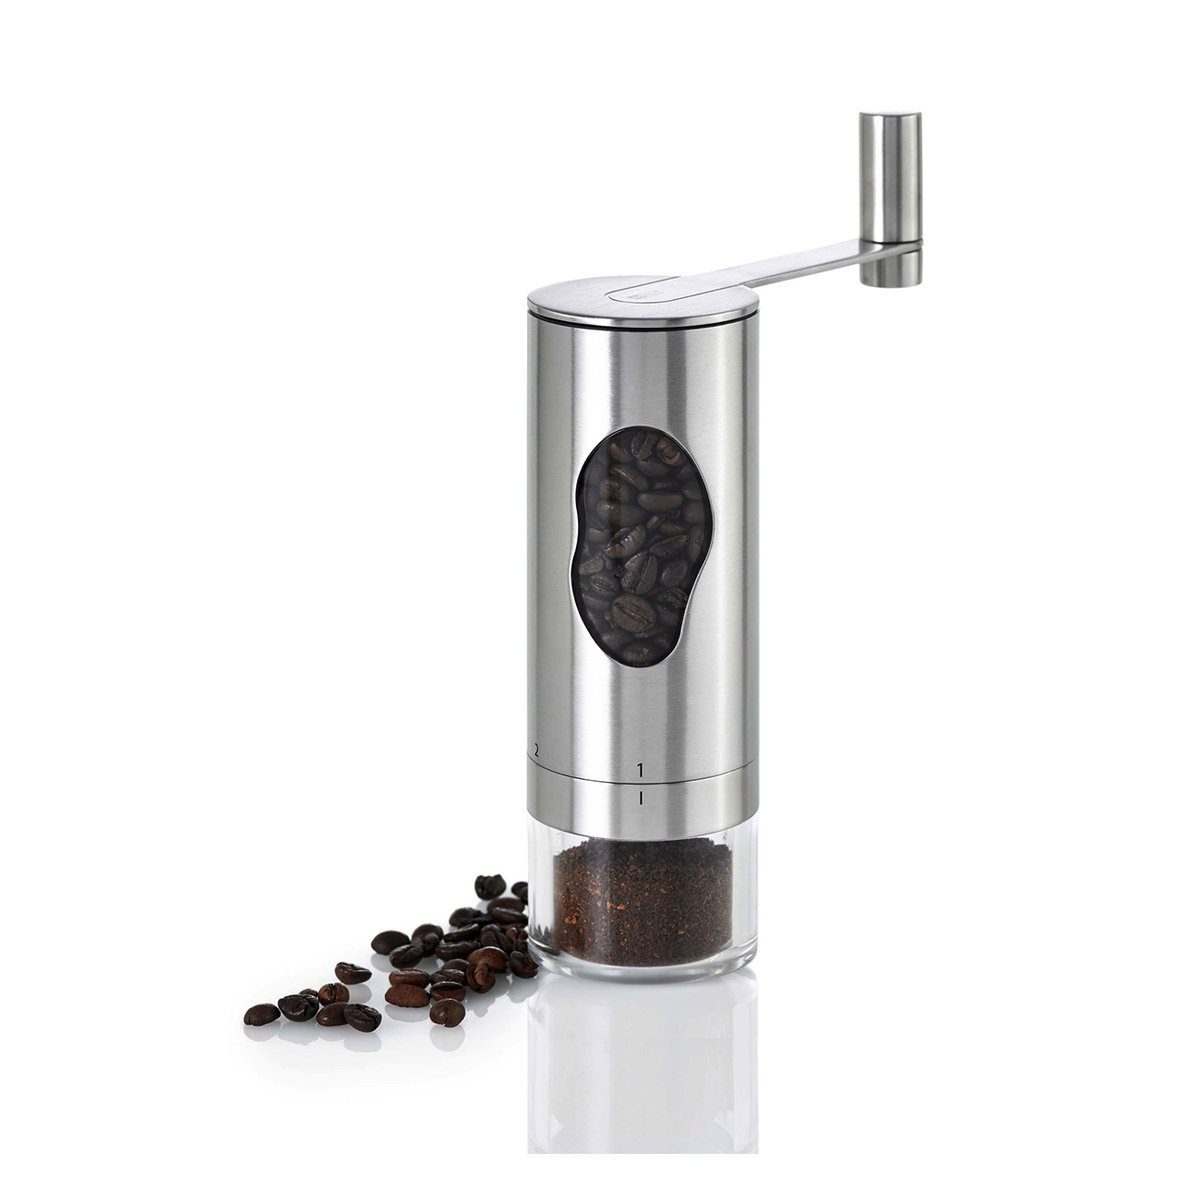 AdHoc MC01  młynka do kawy Mrs, Bean  stal nierdzewna  akryl  6 wysokość 18 cm 78MC01